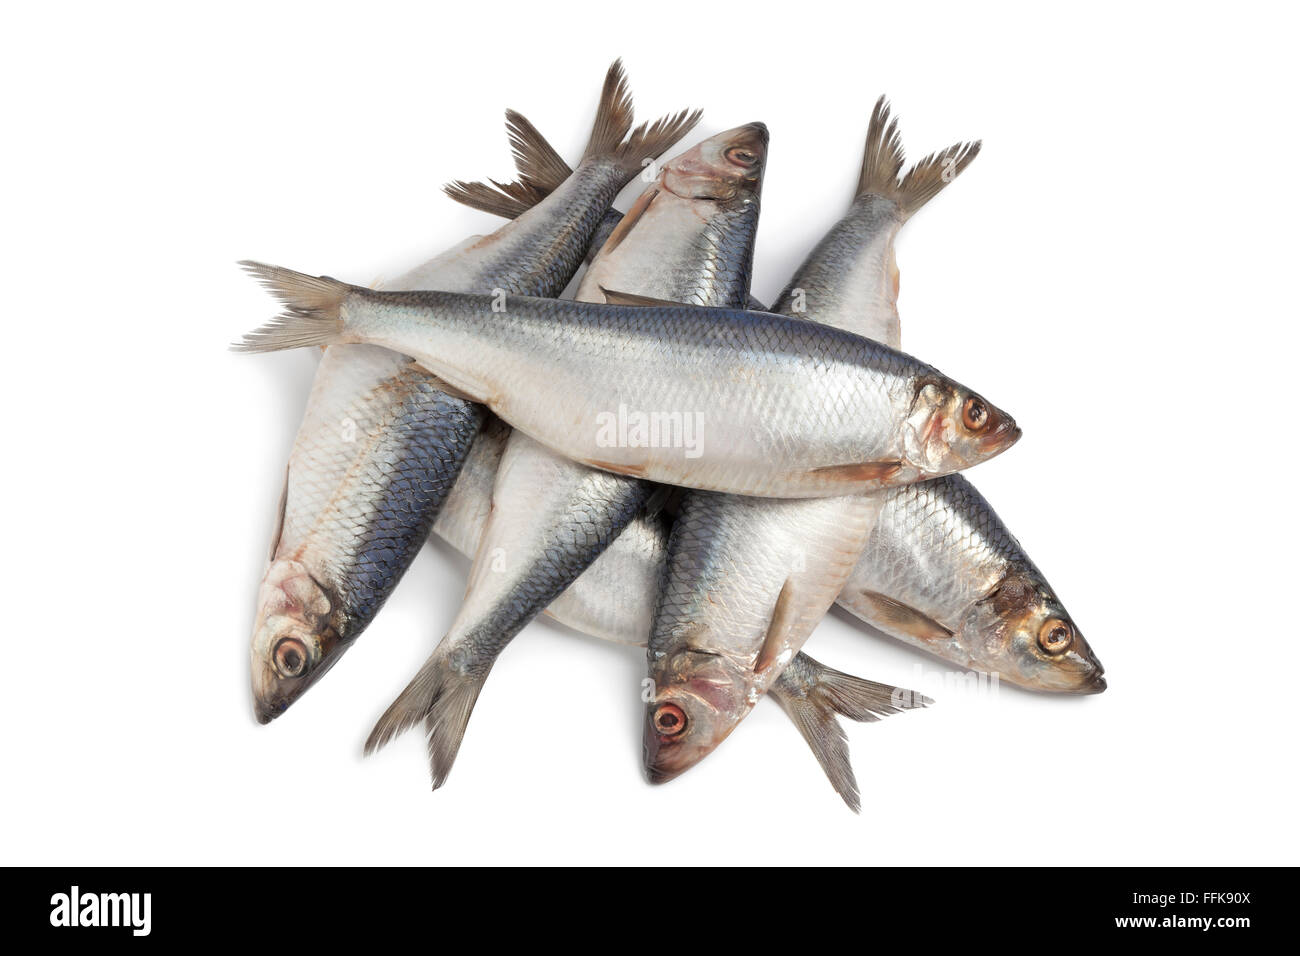 Whole fresh raw herring on white background Stock Photo